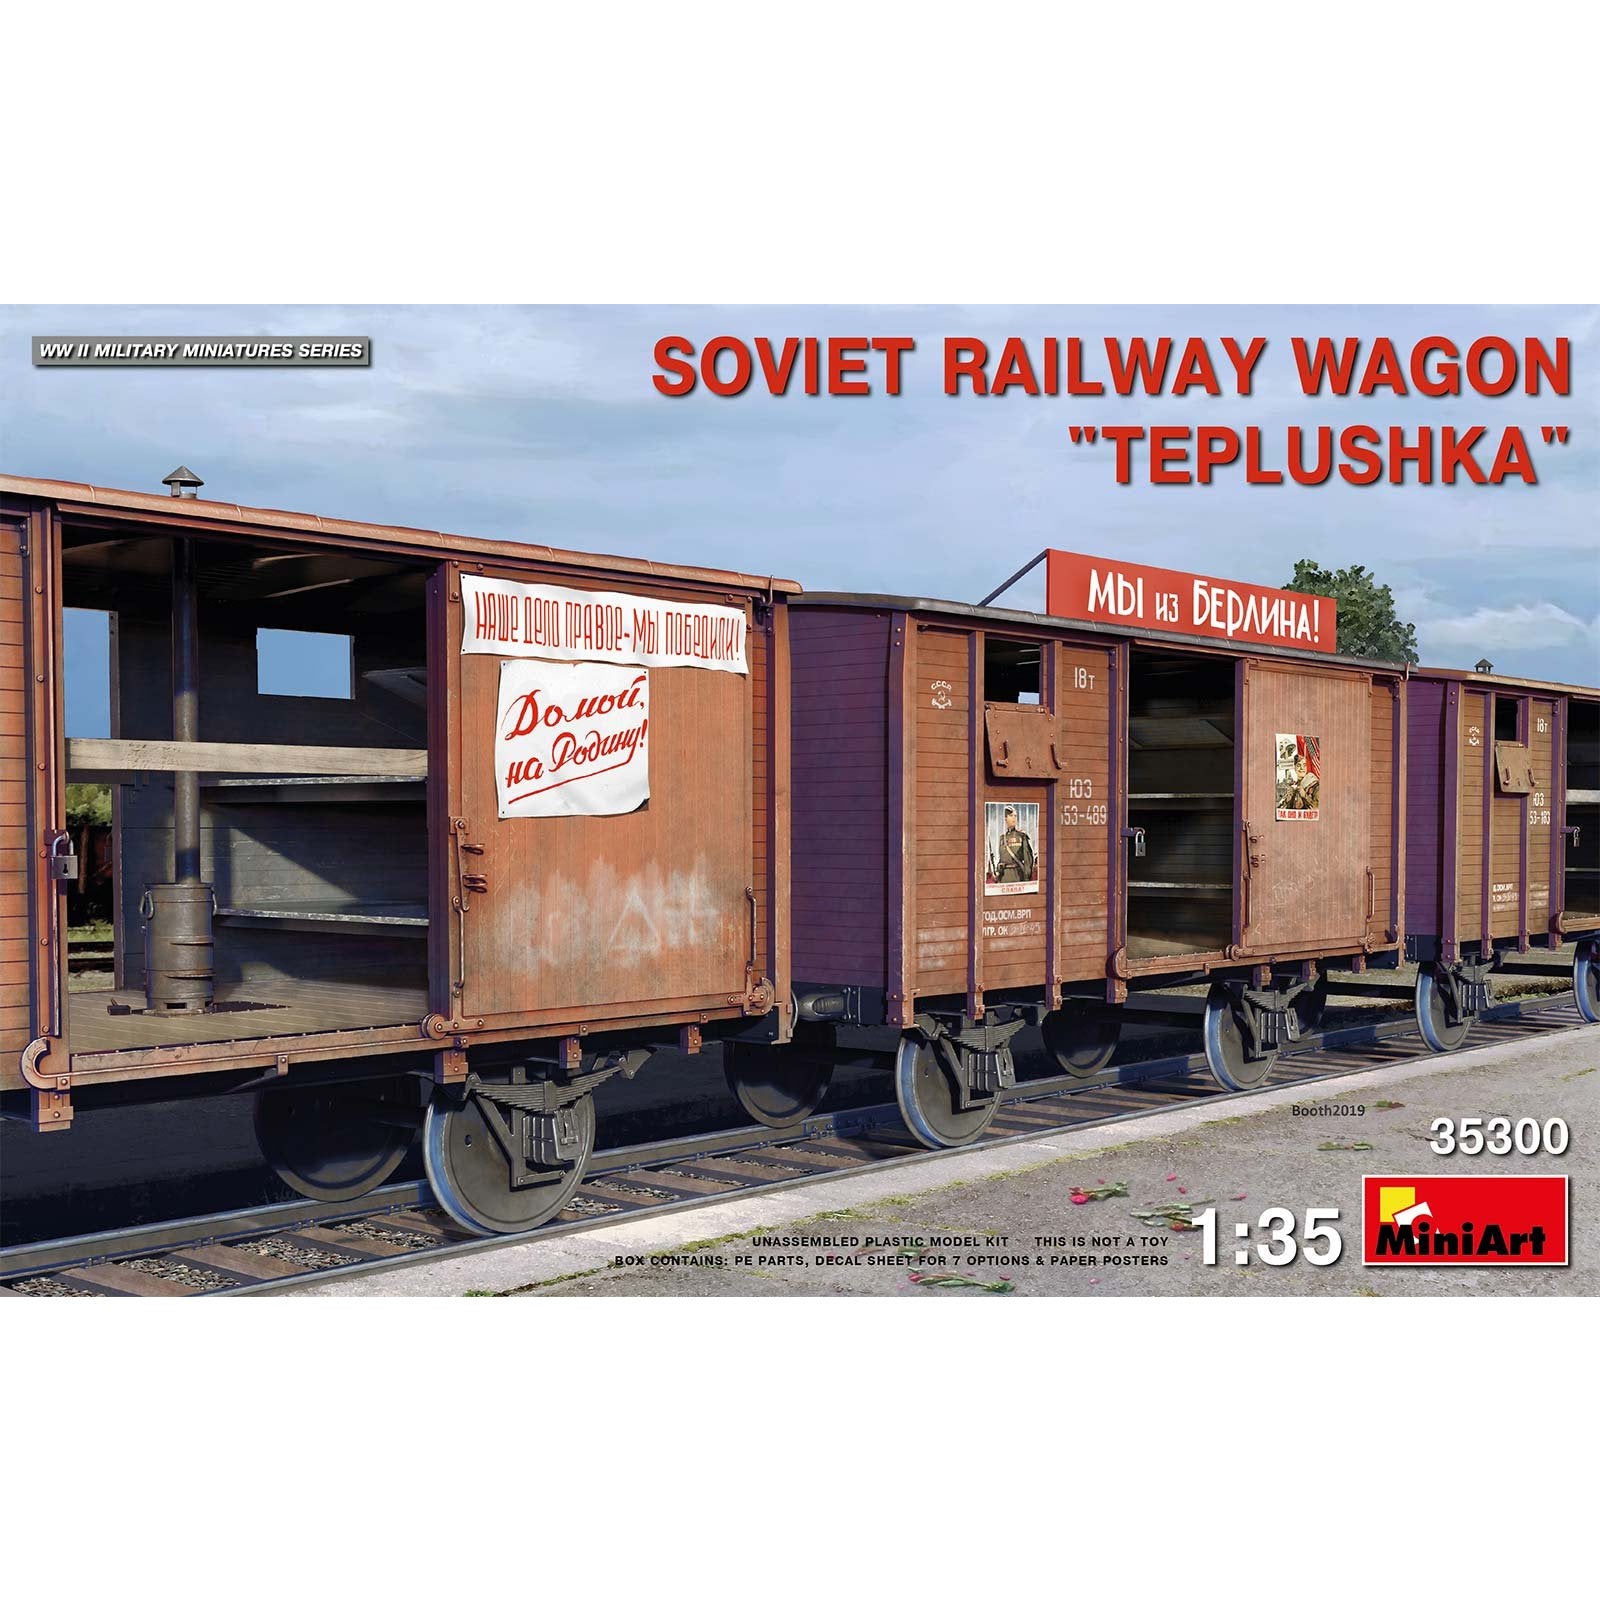 Soviet Railway Wagon " Teplushka" 1/35 #35300 by MiniArt